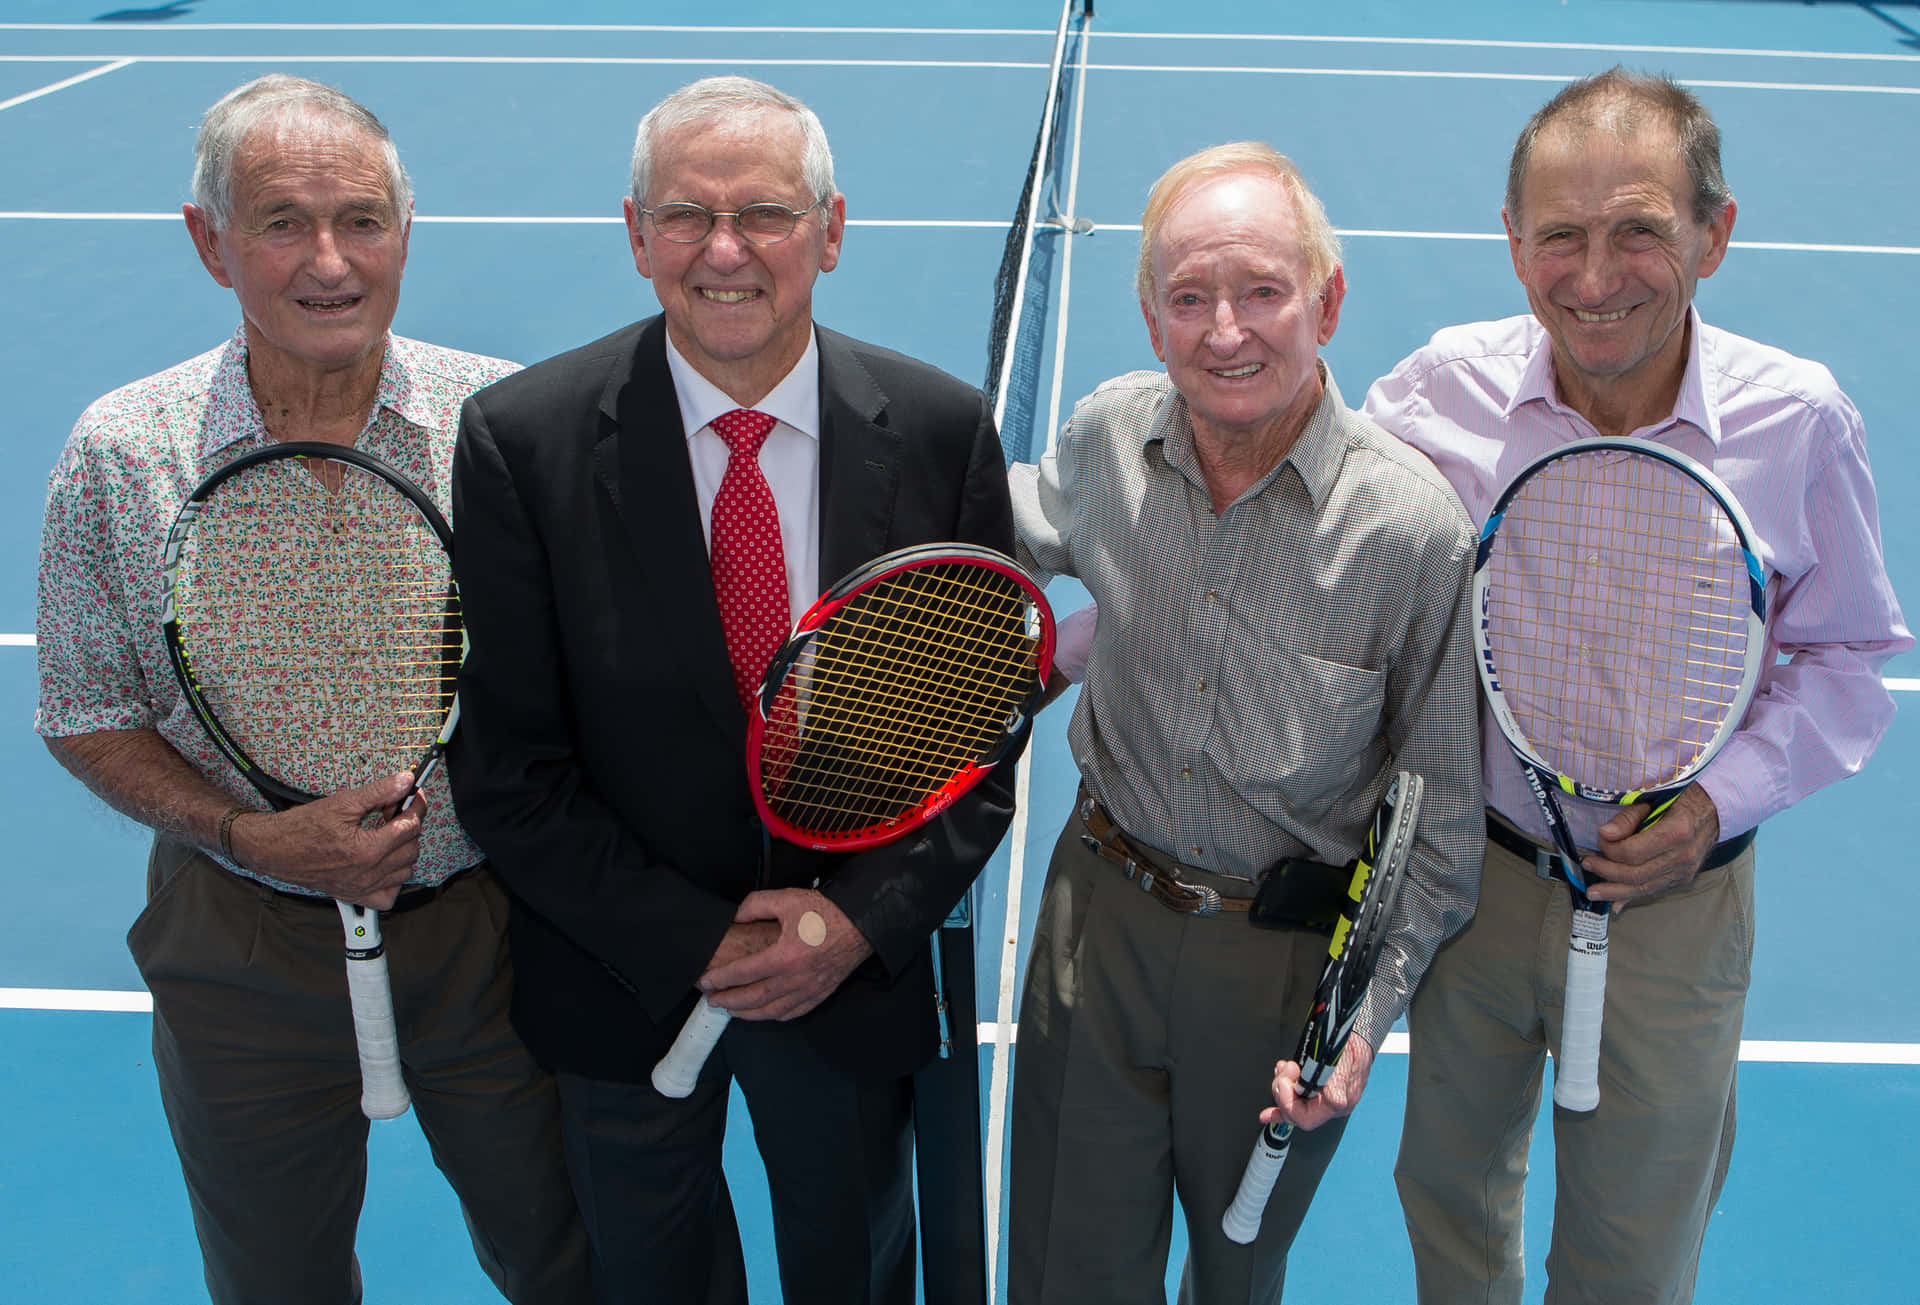 Antiguosjugadores De Tenis En El Centro De Tenis Roy Emerson Fondo de pantalla